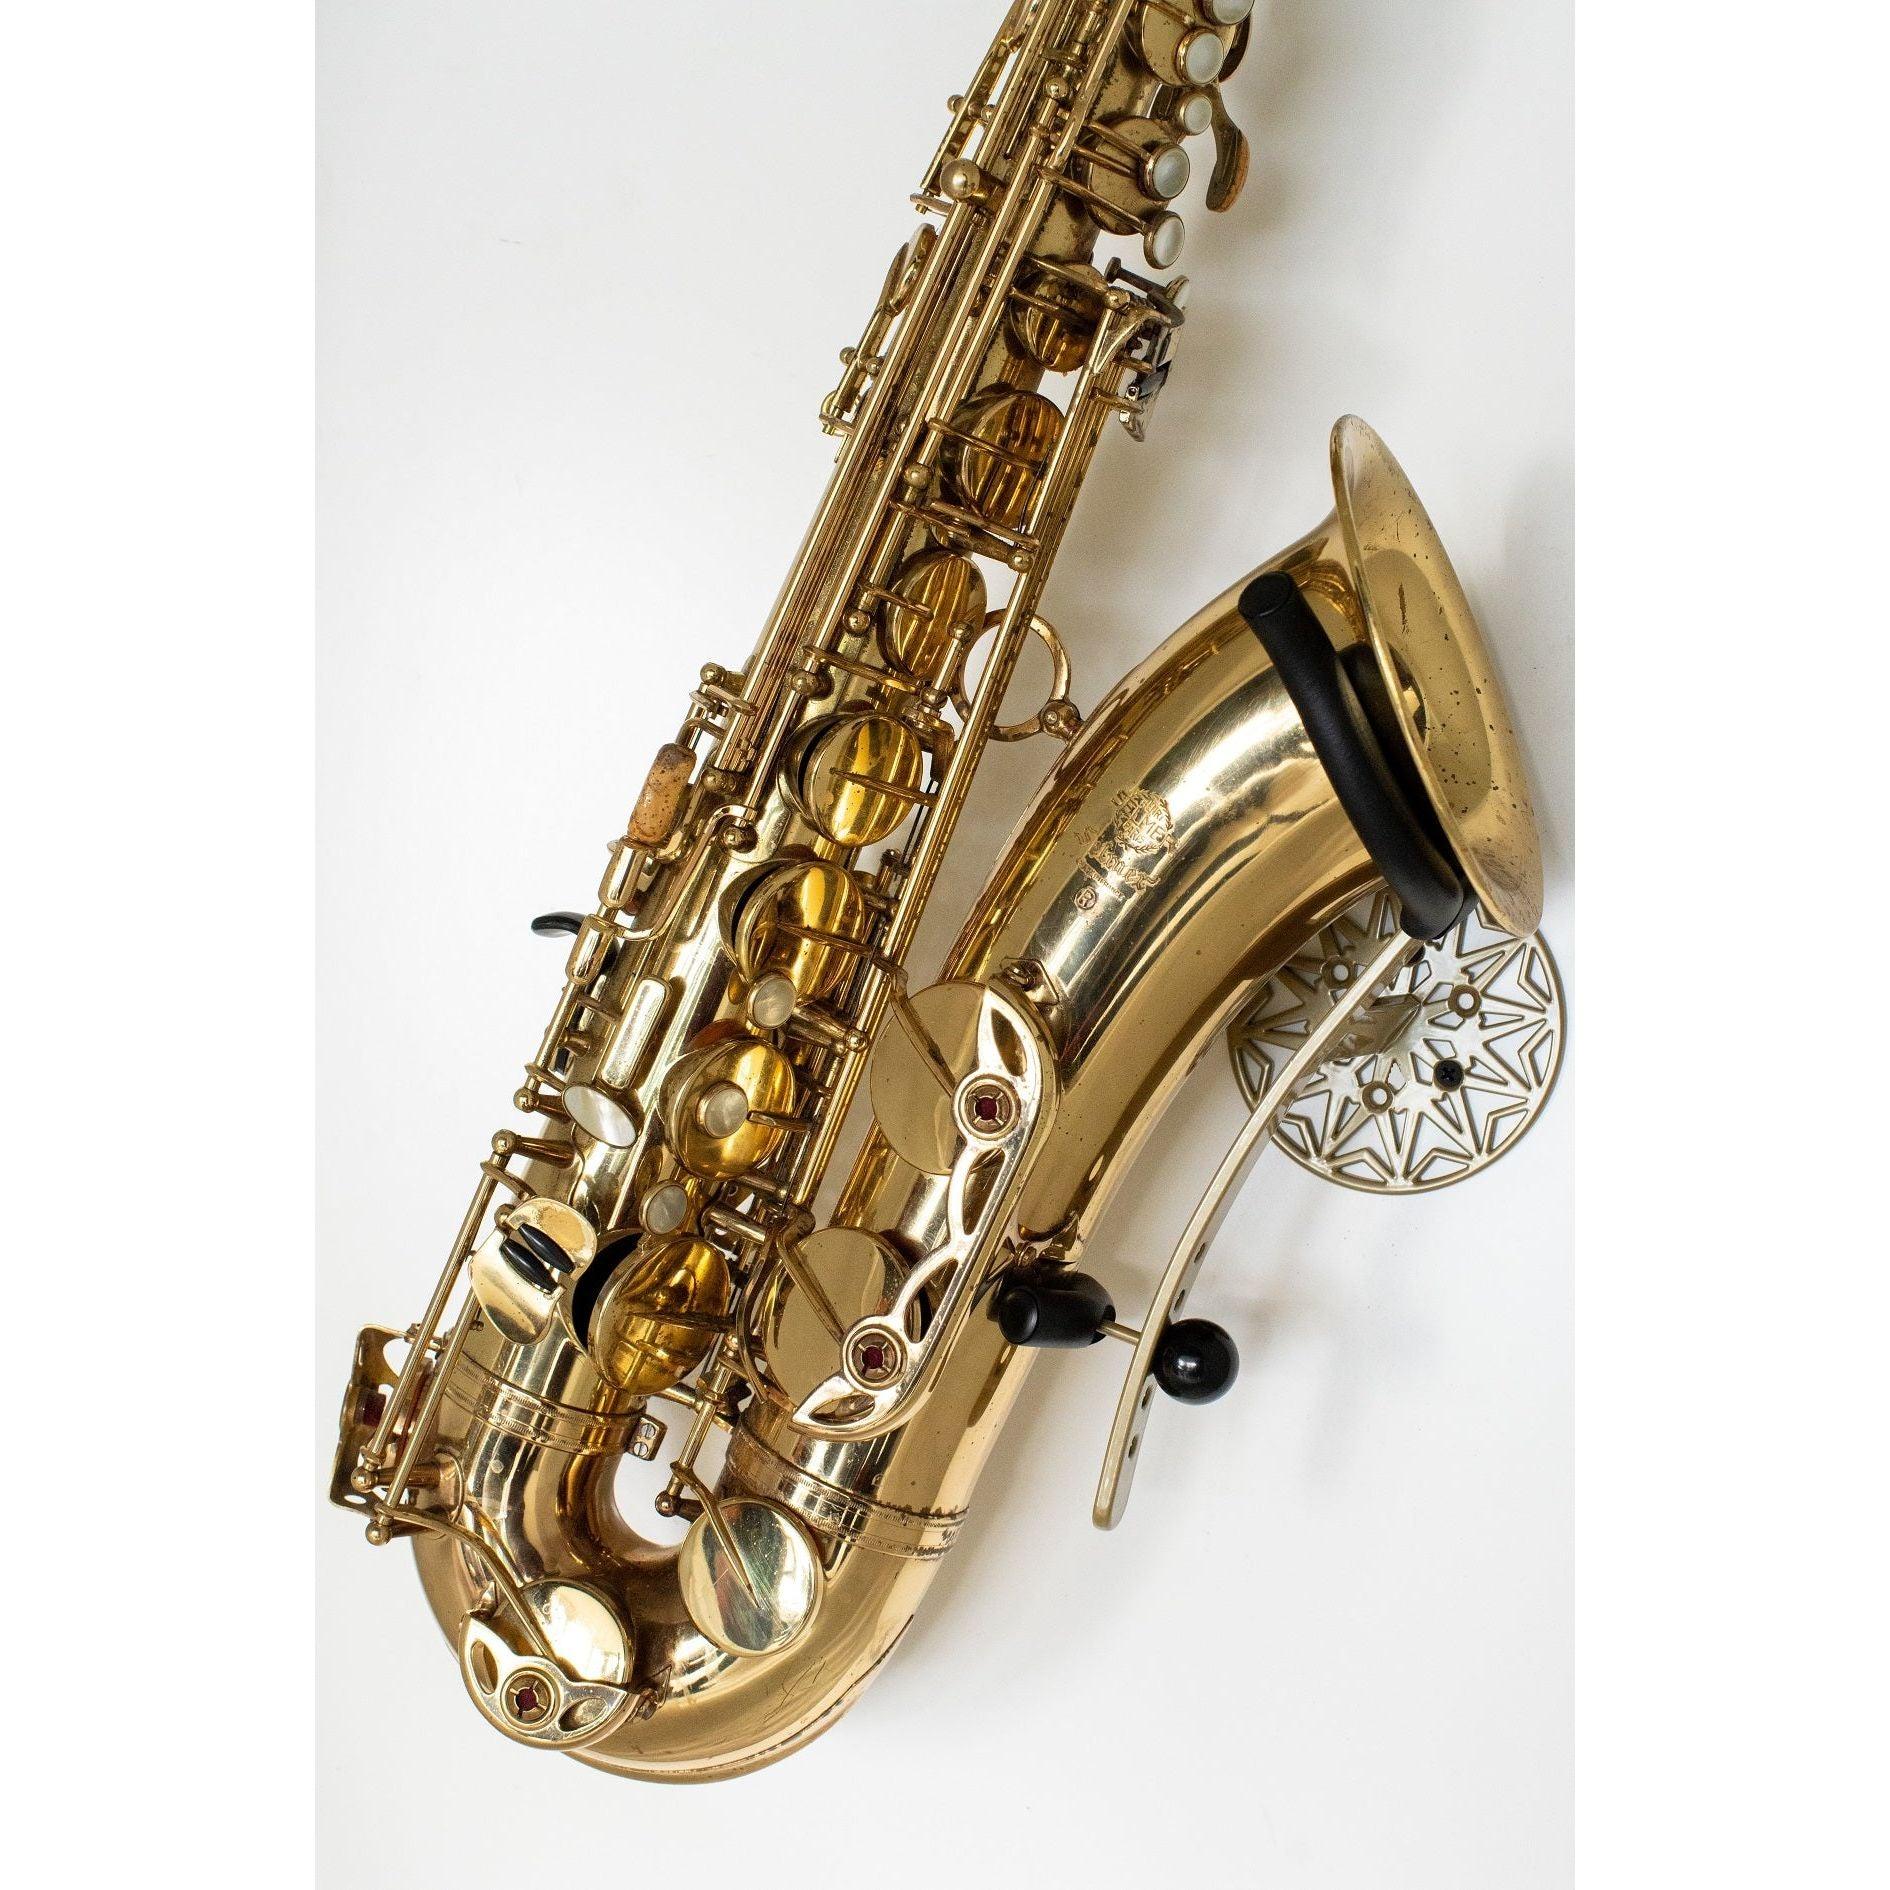 gold Selmer Mark 7 tenor saxophone in wallmount Samba on white wall by Locoparasaxo.com